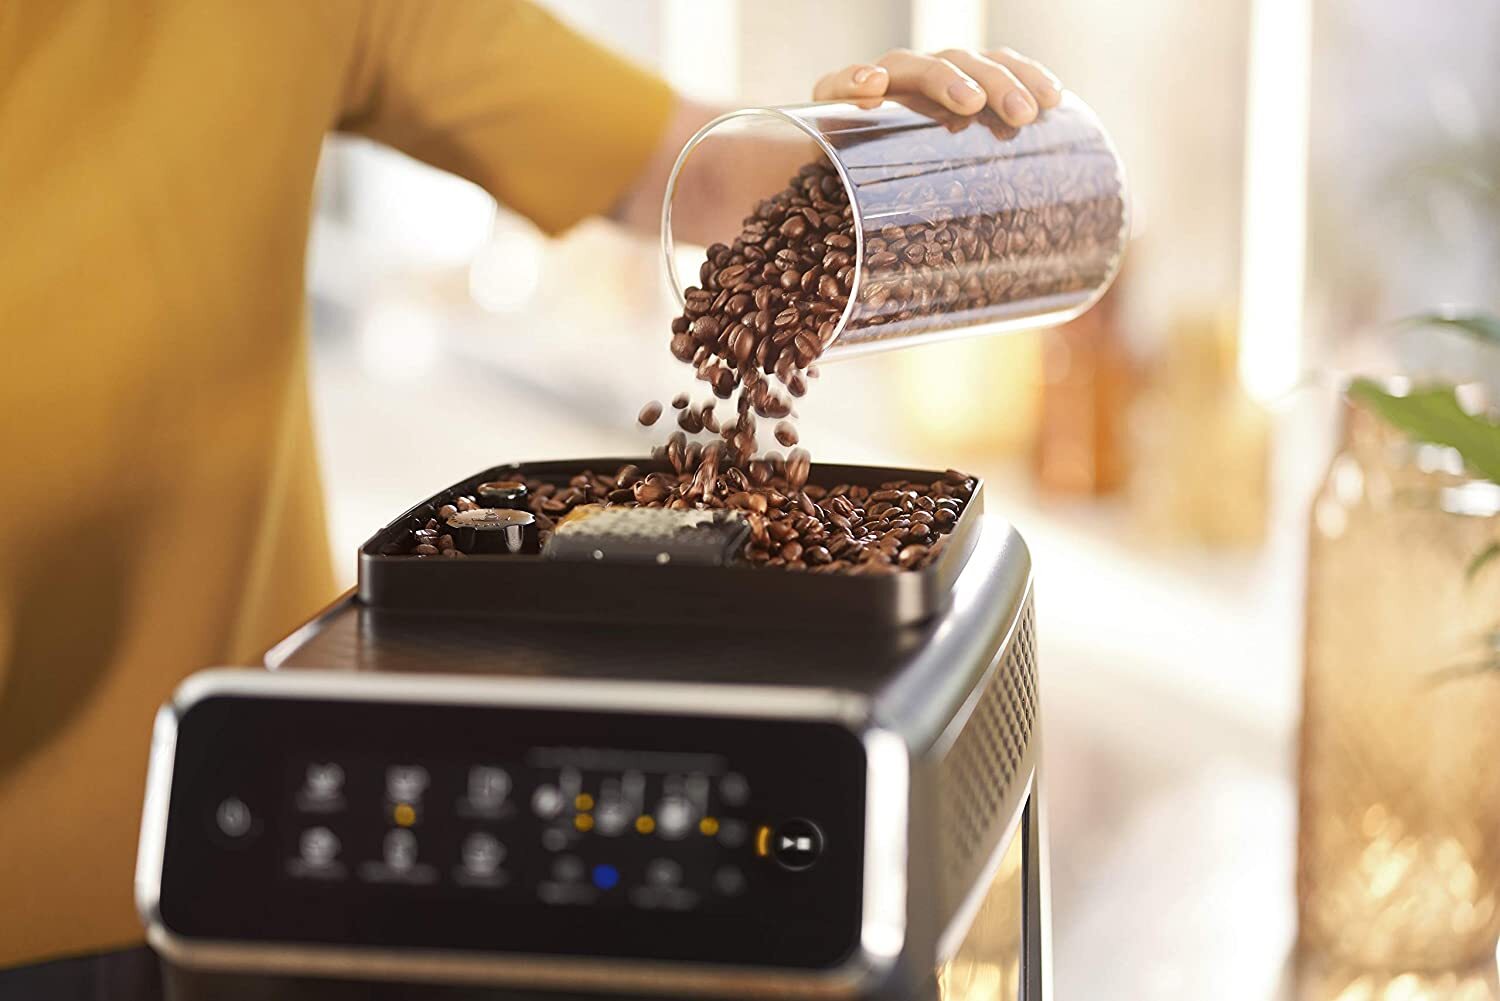 Máquinas de café expresso totalmente automáticas Philips série 5400